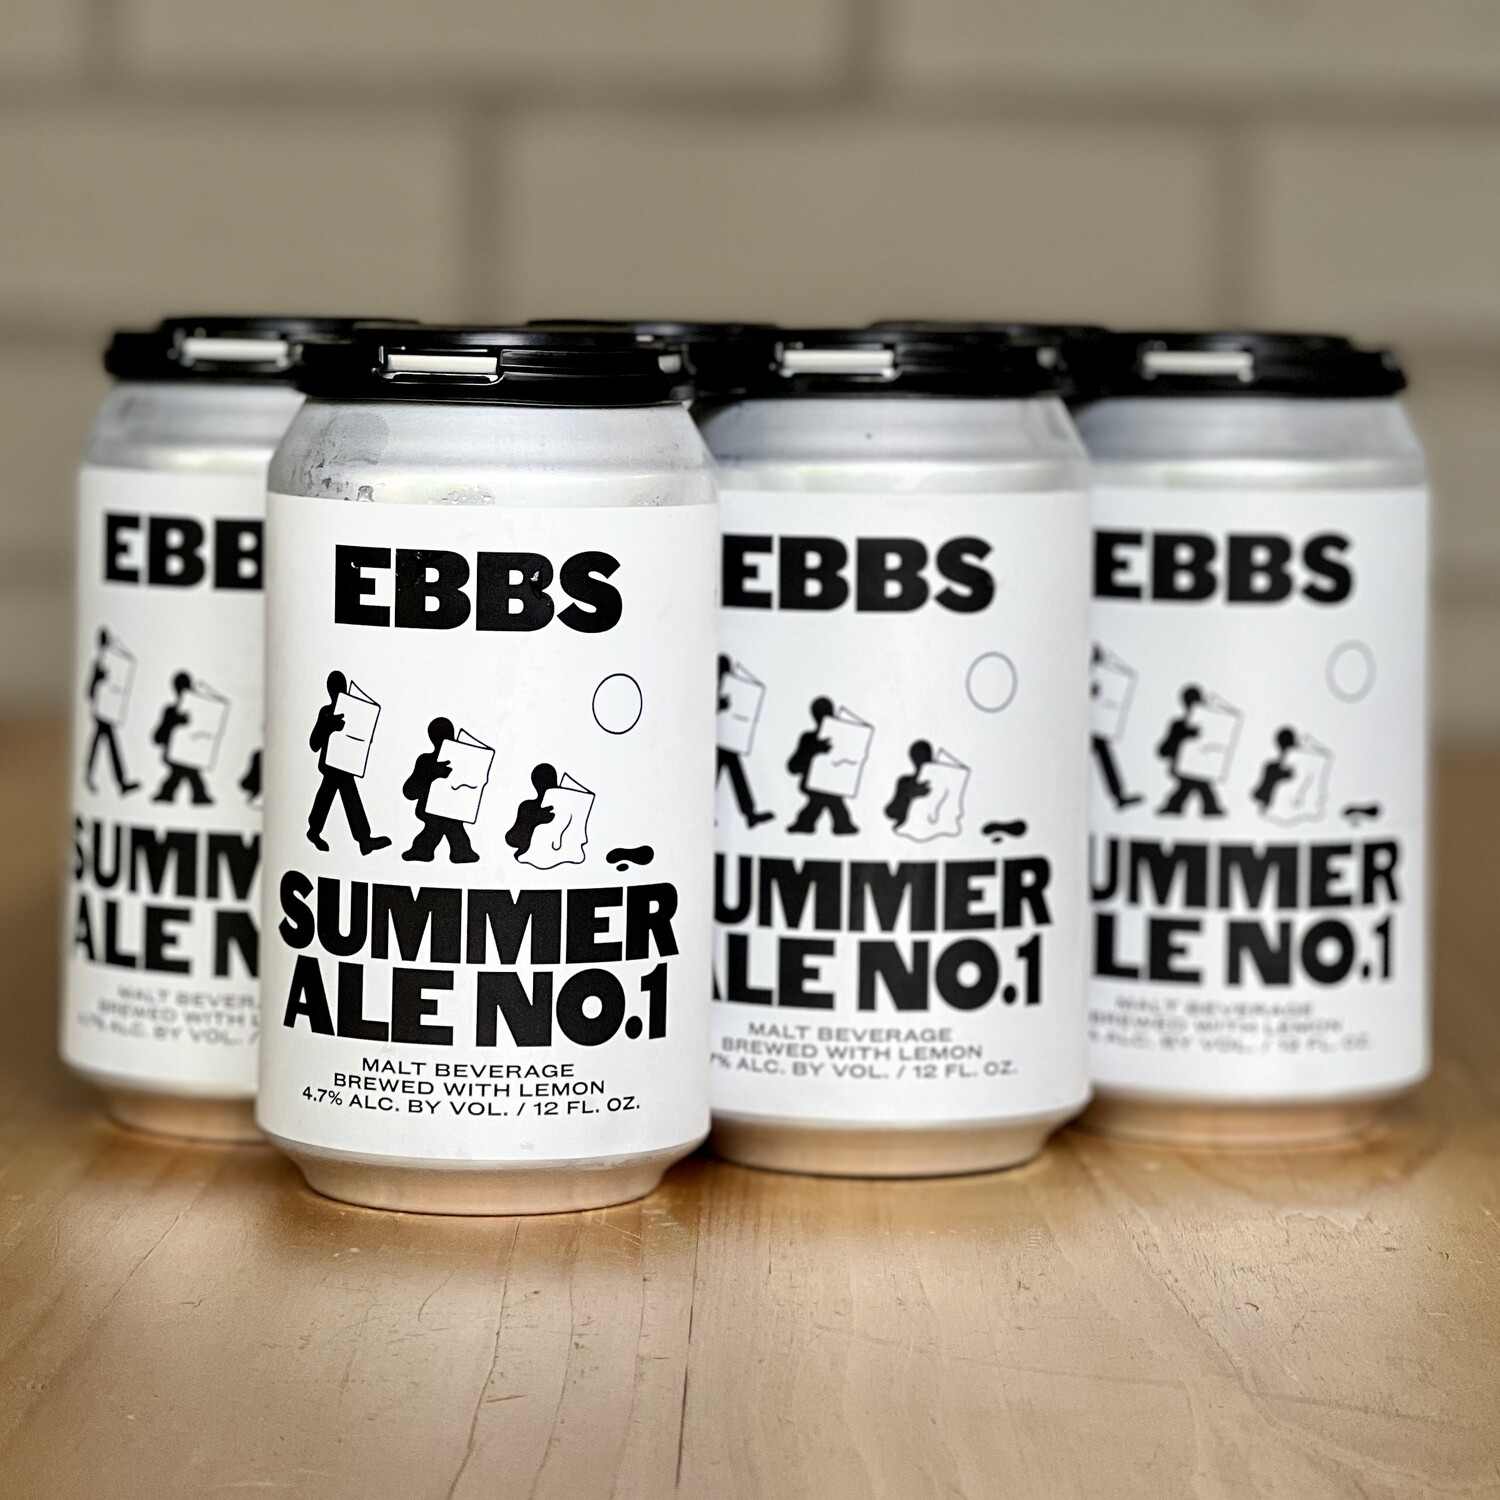 EBBS Summer Ale No. 1 (6pk)